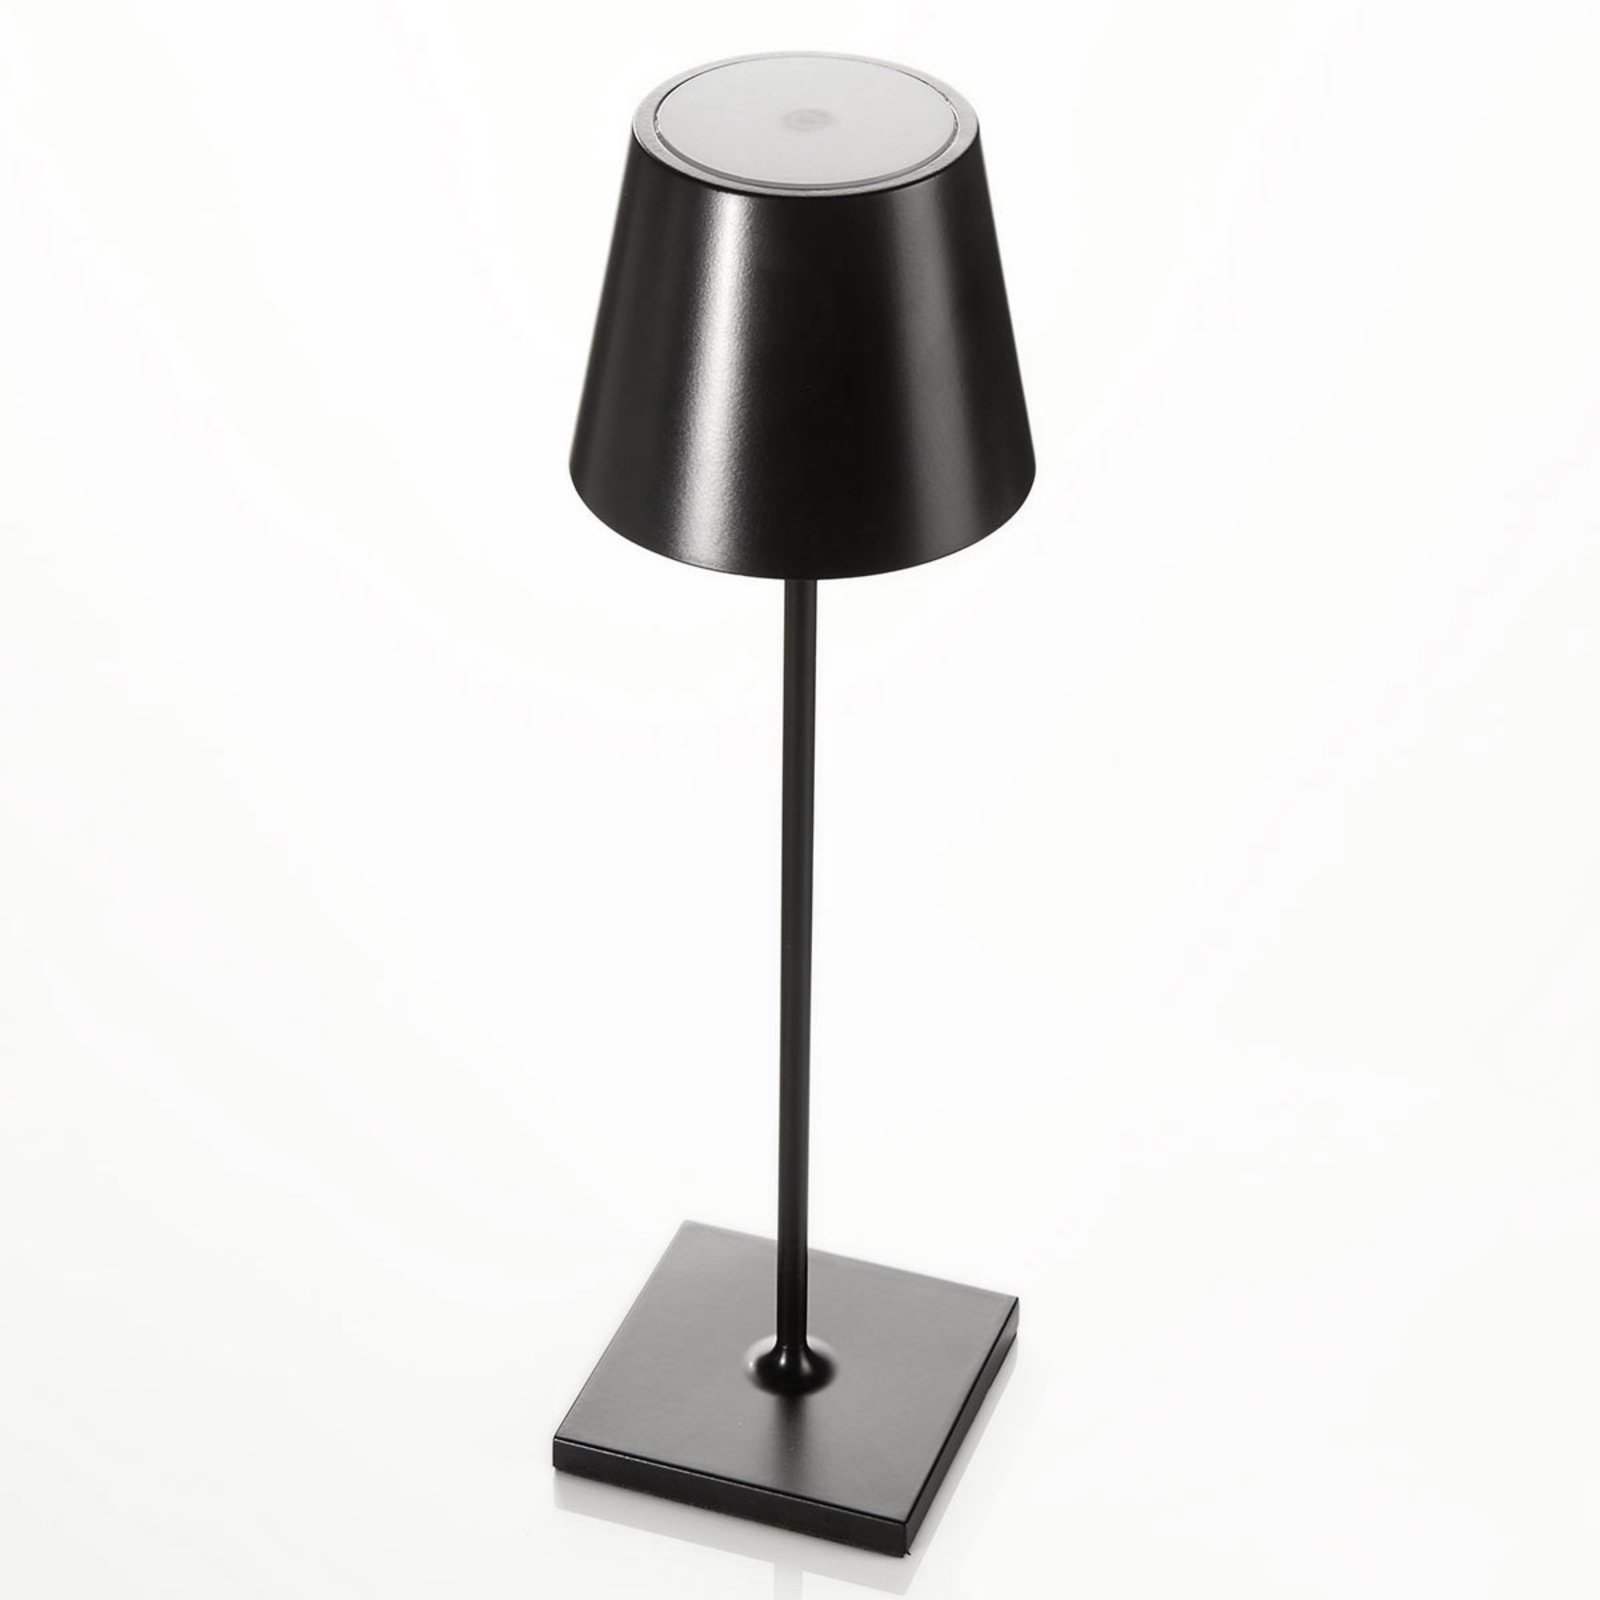 Lampa stołowa LED Toc ładowarka USB, IP54, czarna